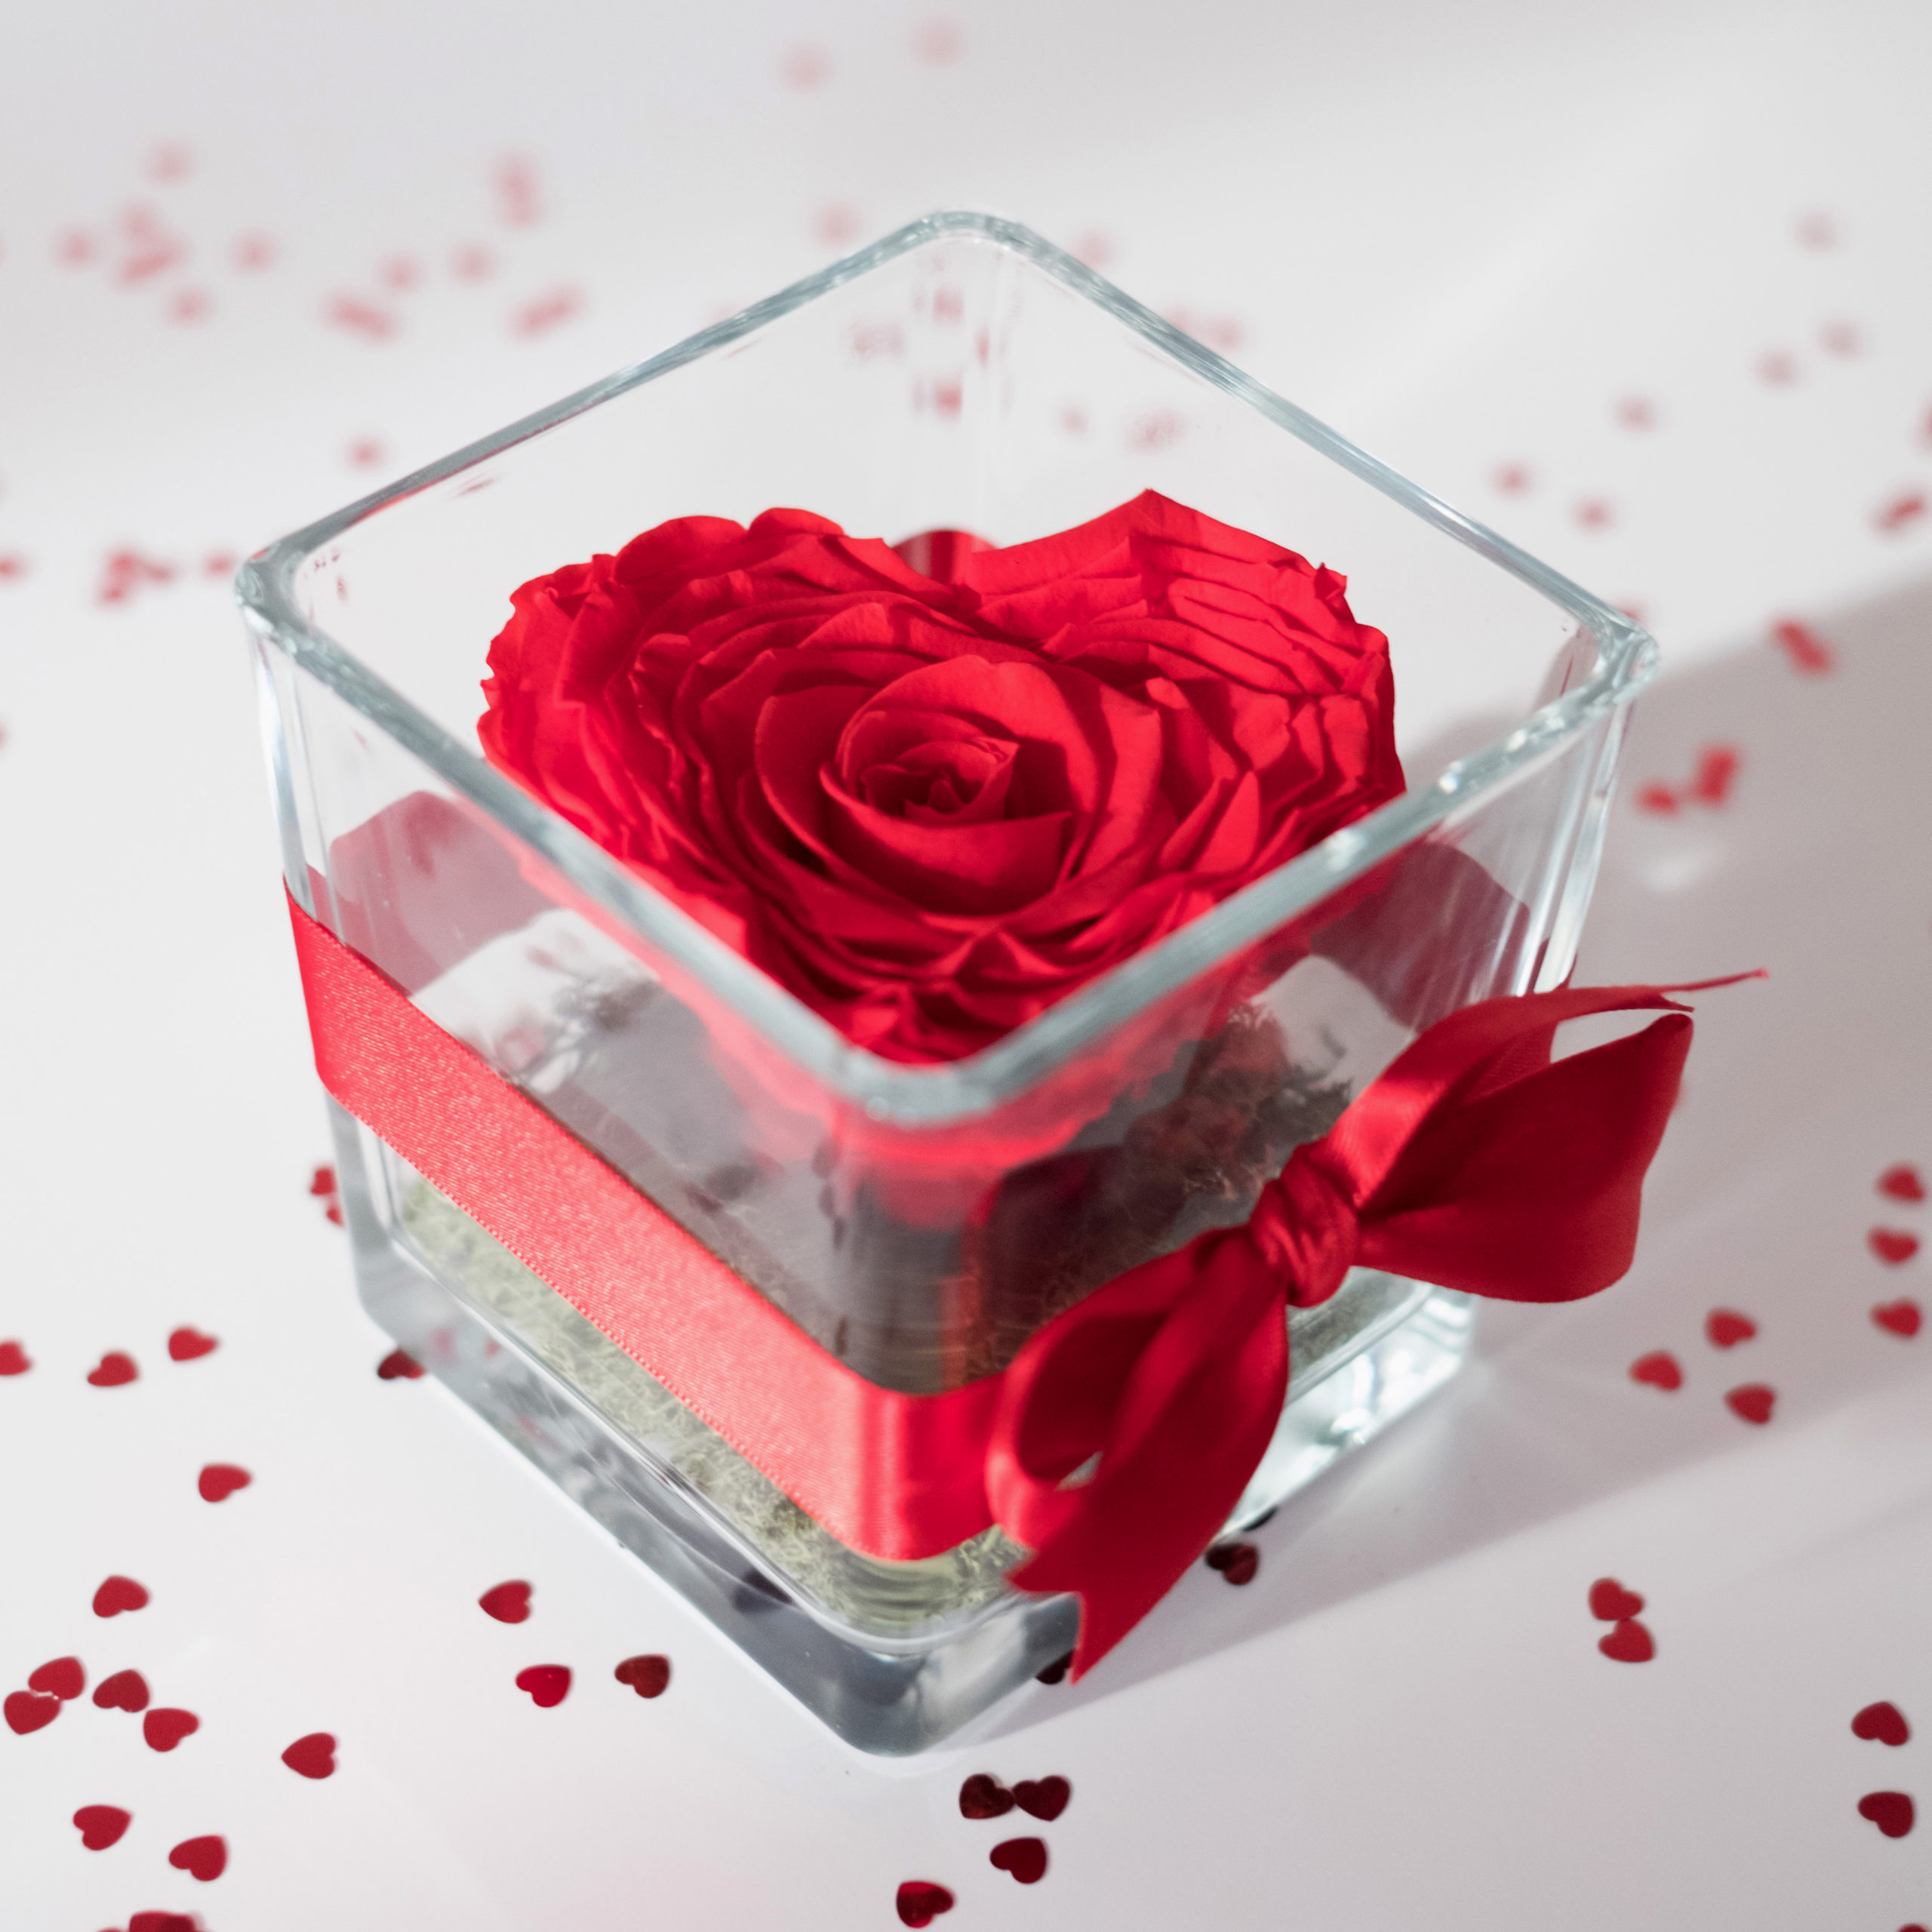 rosa rossa a forma di cuore stabilizzata nel contenitore di vetro con nastro rosso su tavolo bianco